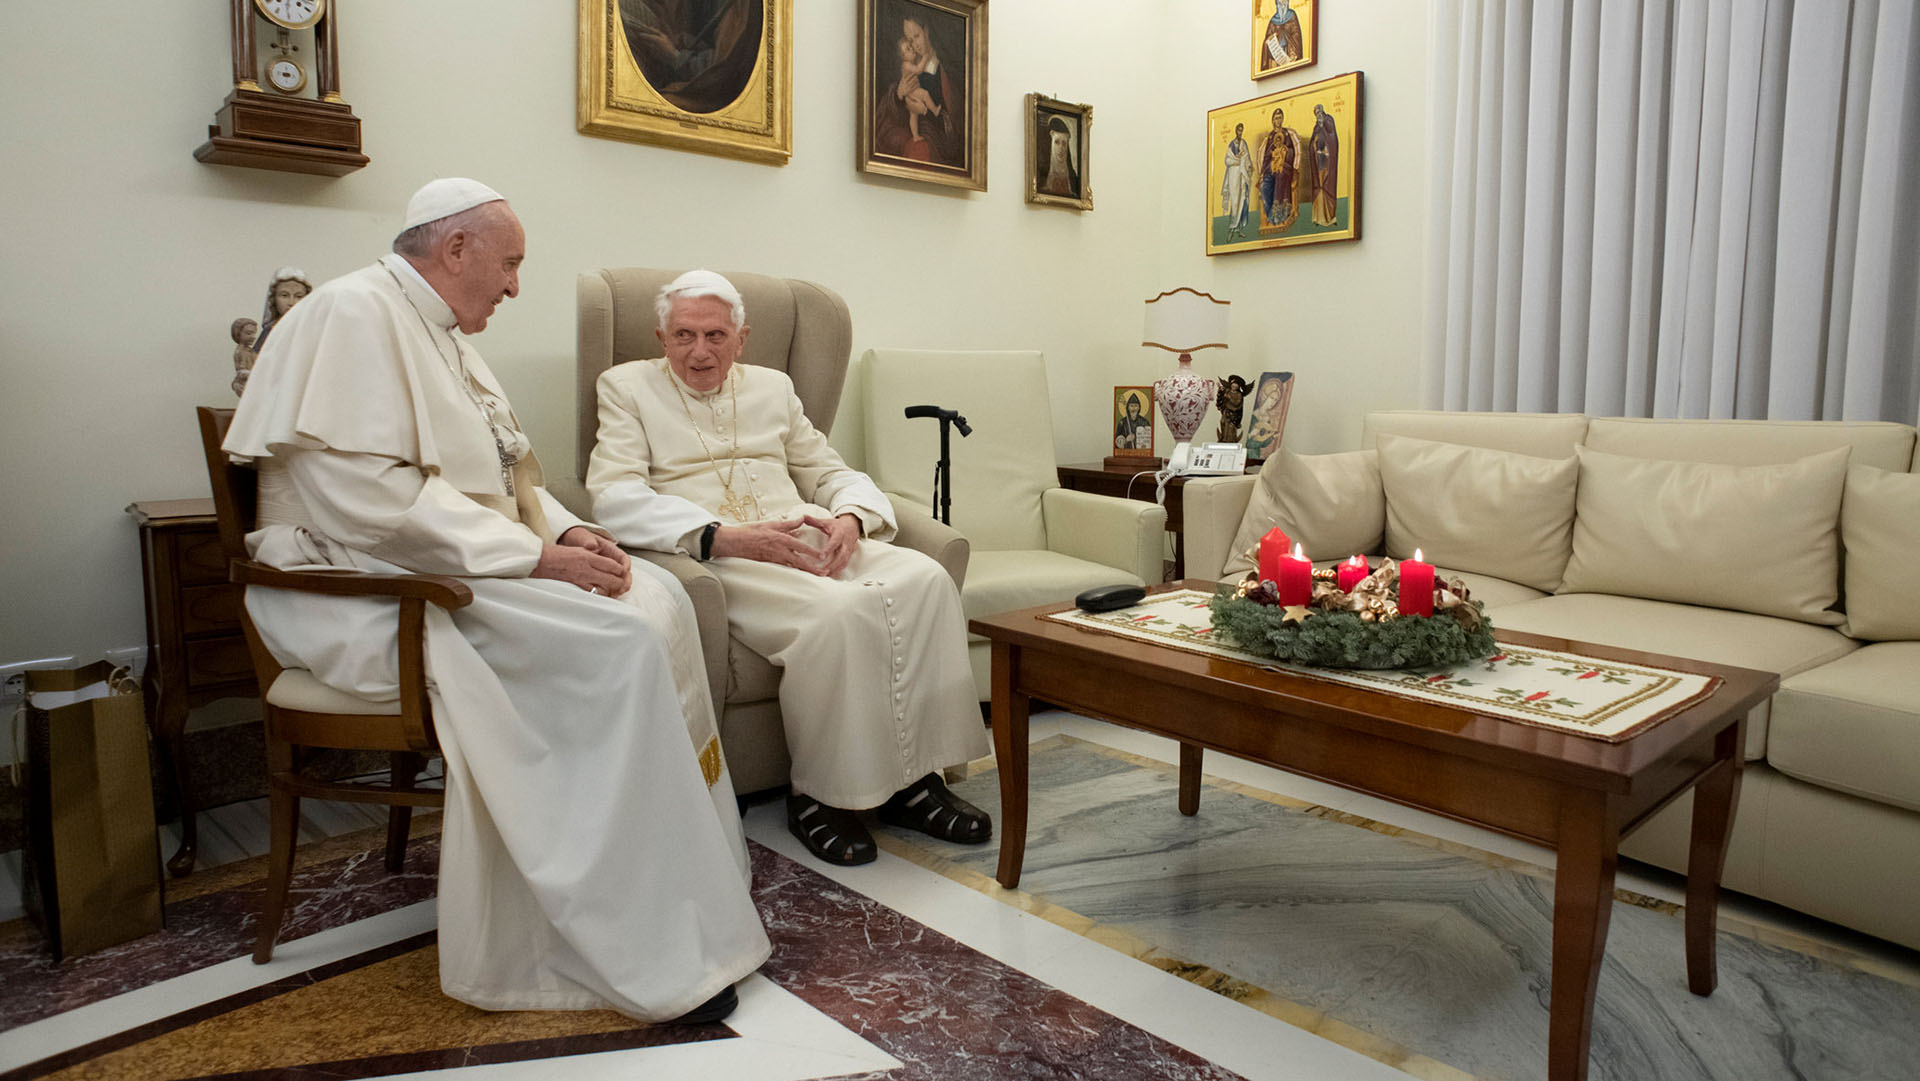 De Alemania a la Santa Sede, la vida de Joseph Ratzinger, Benedicto XVI, en fotos 